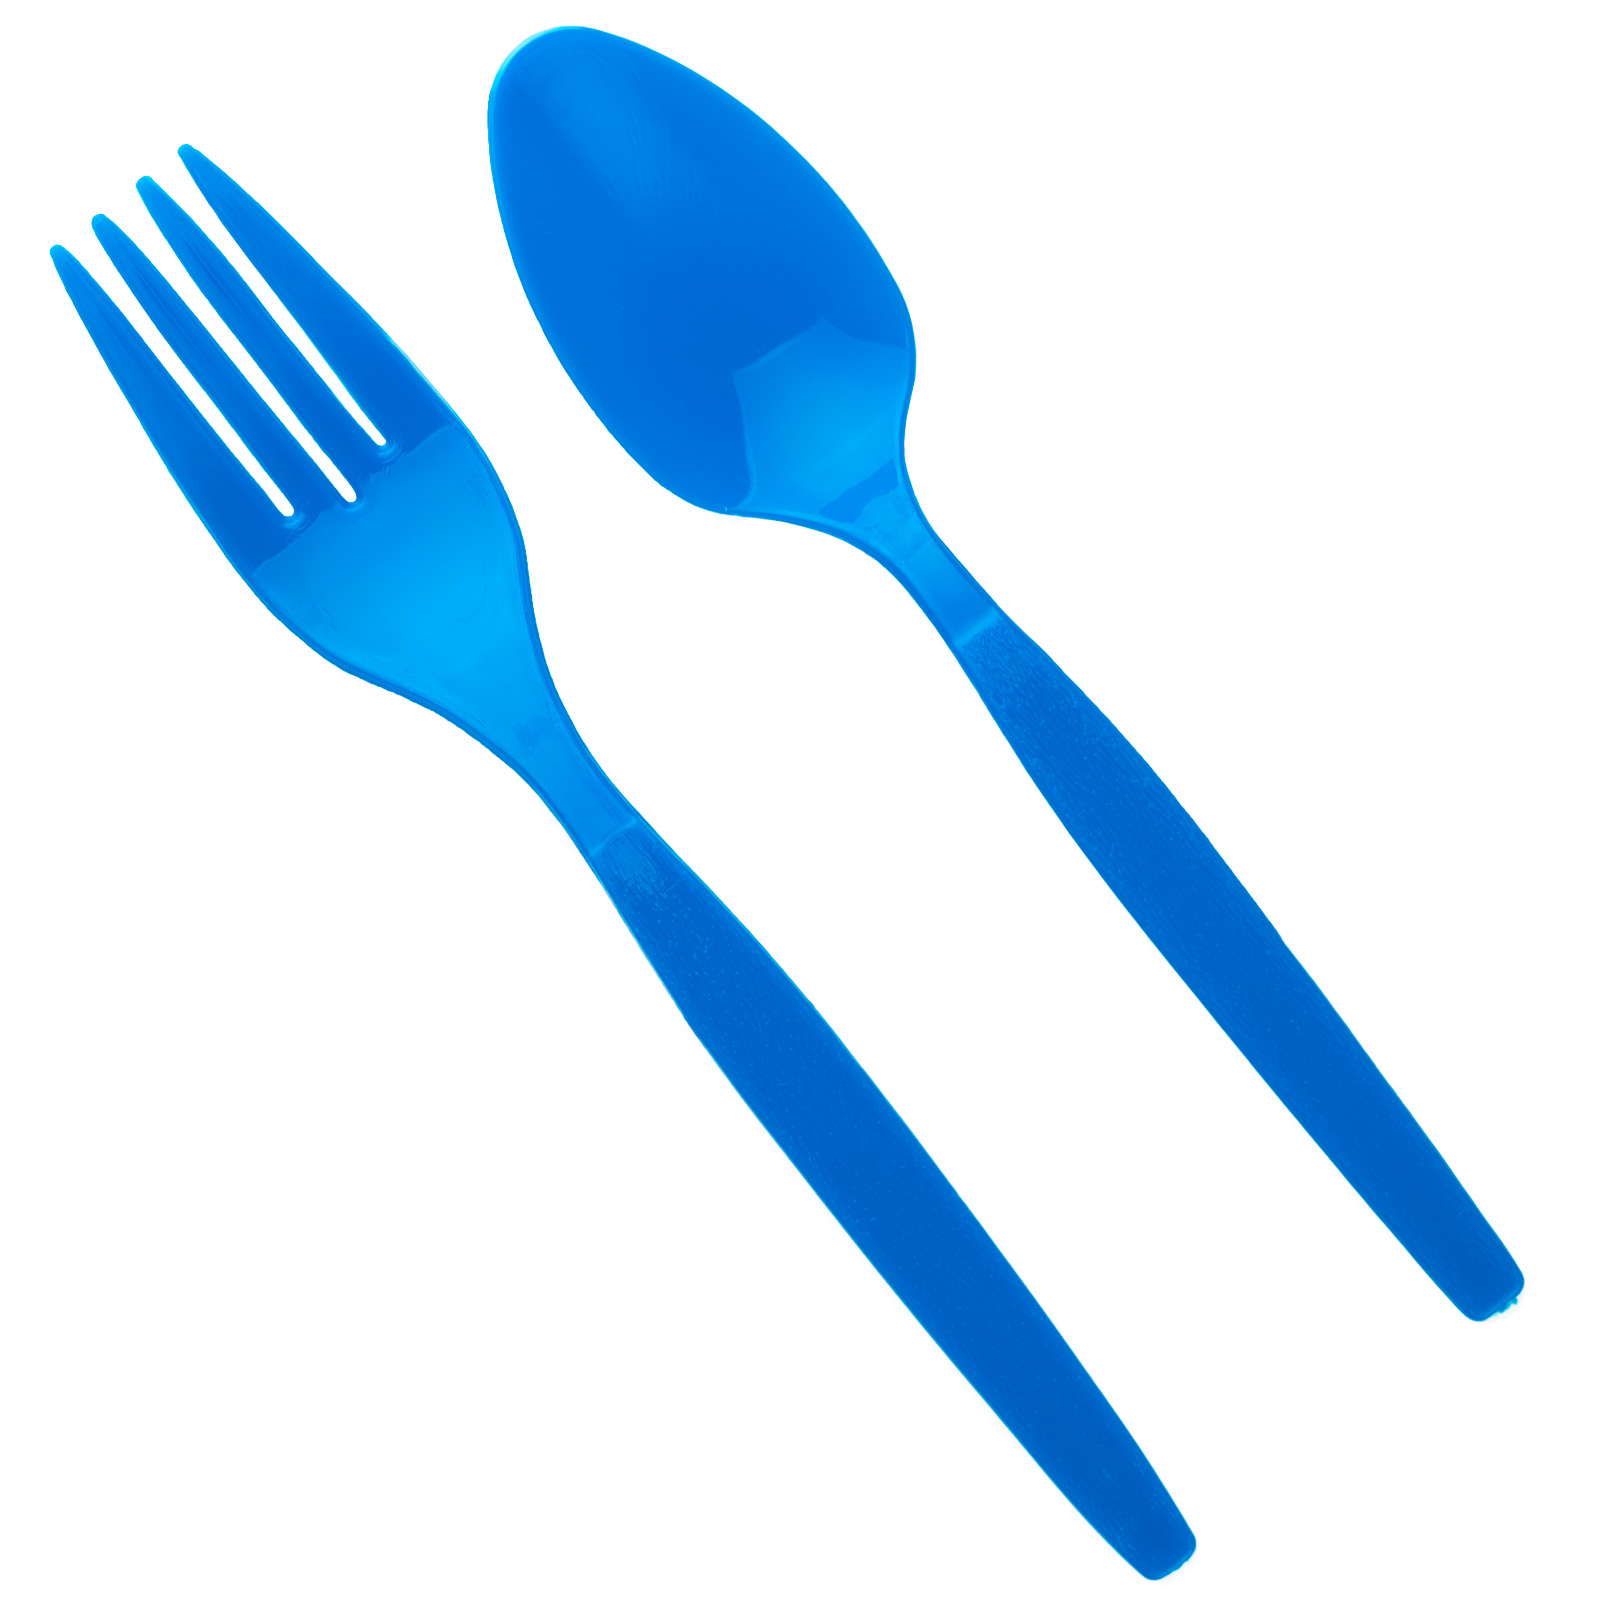 Details about forks.